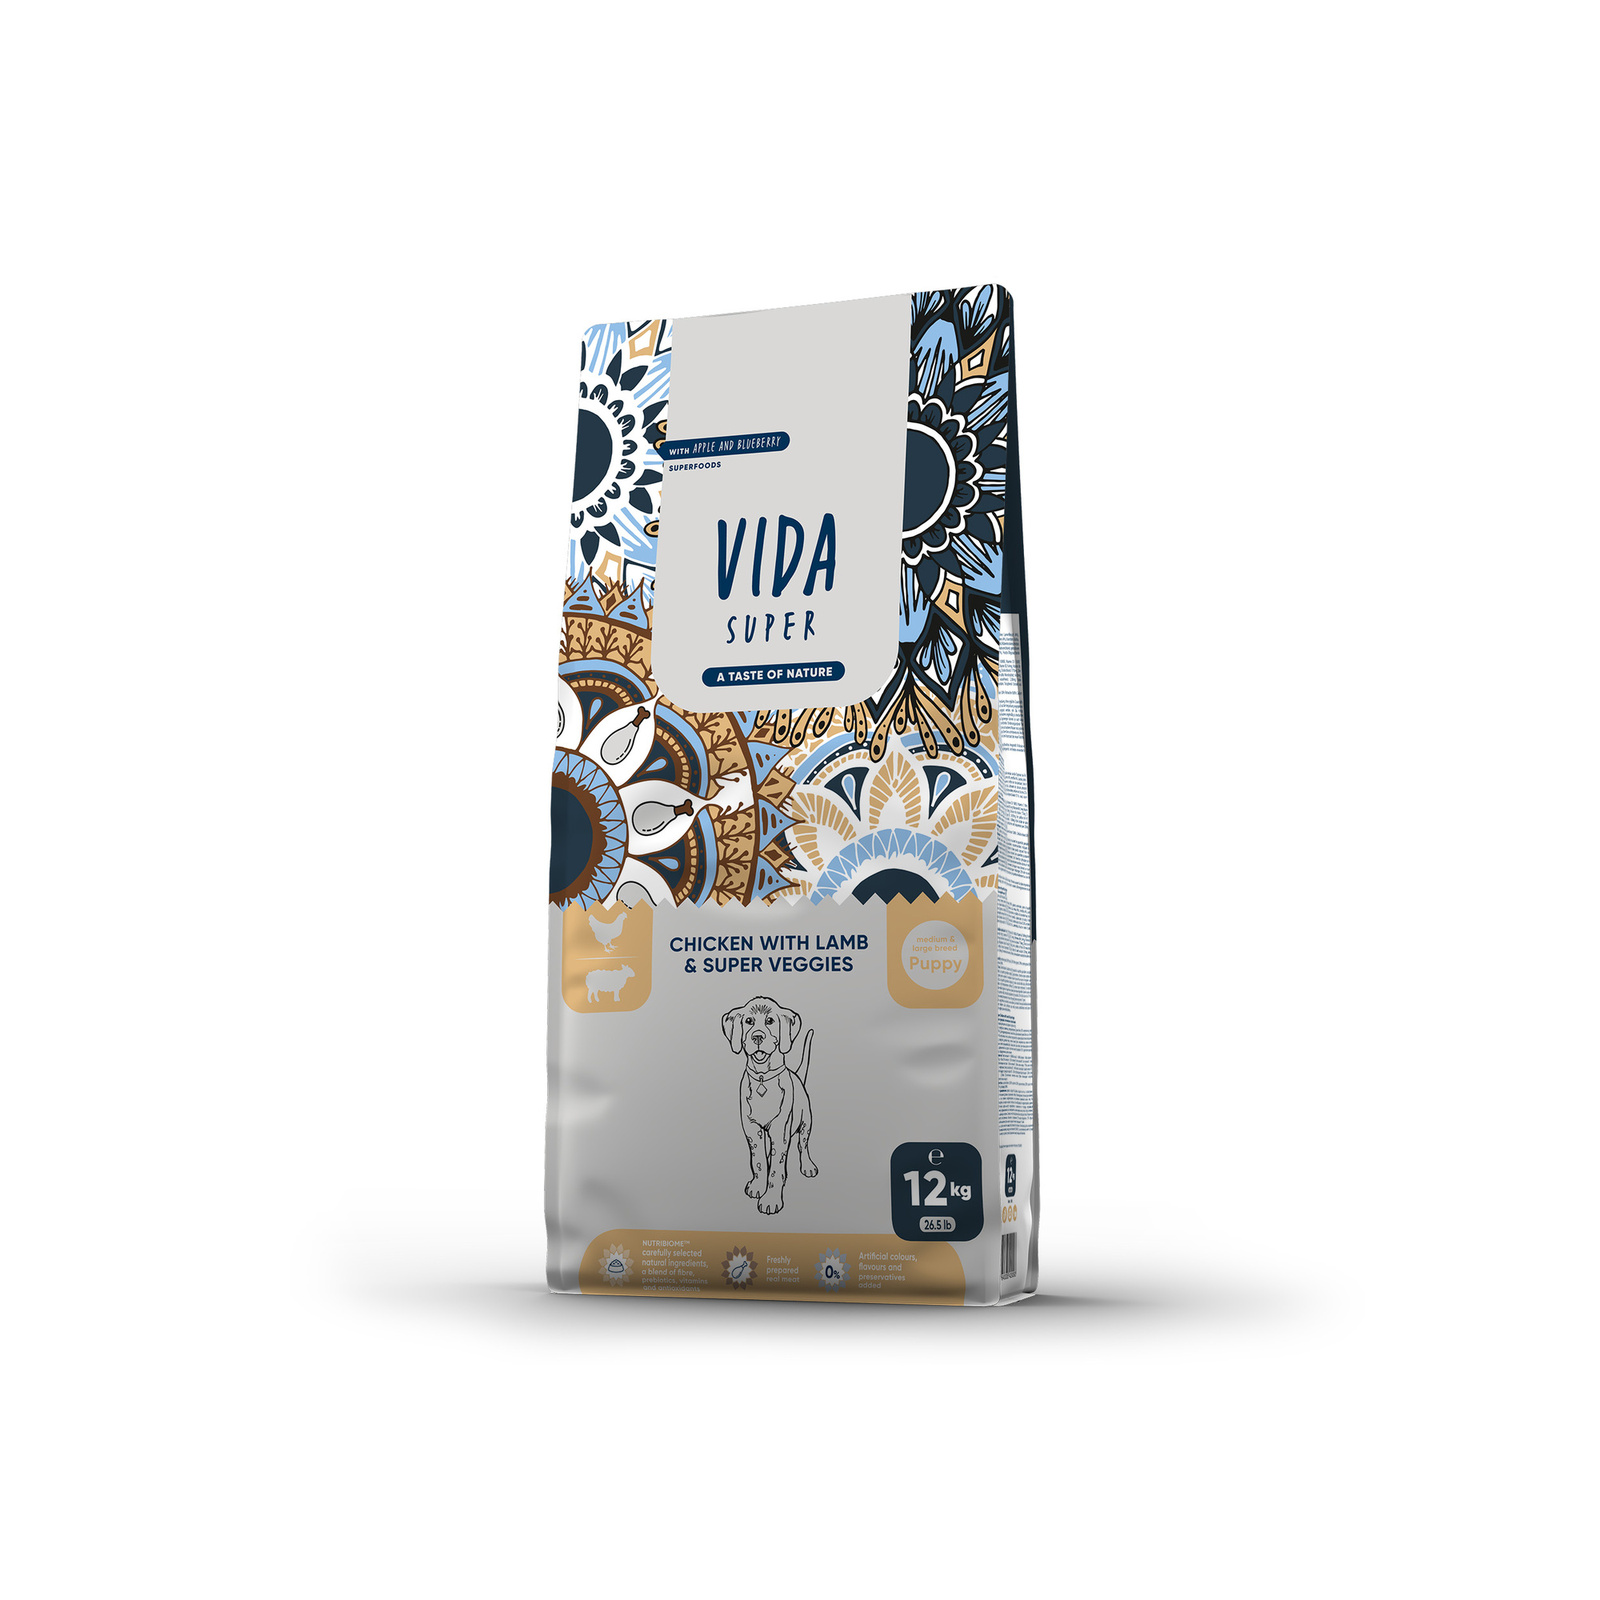 VIDA Super VIDA Super корм для щенков средних и крупных пород с курицей, ягненком и овощами (2 кг)